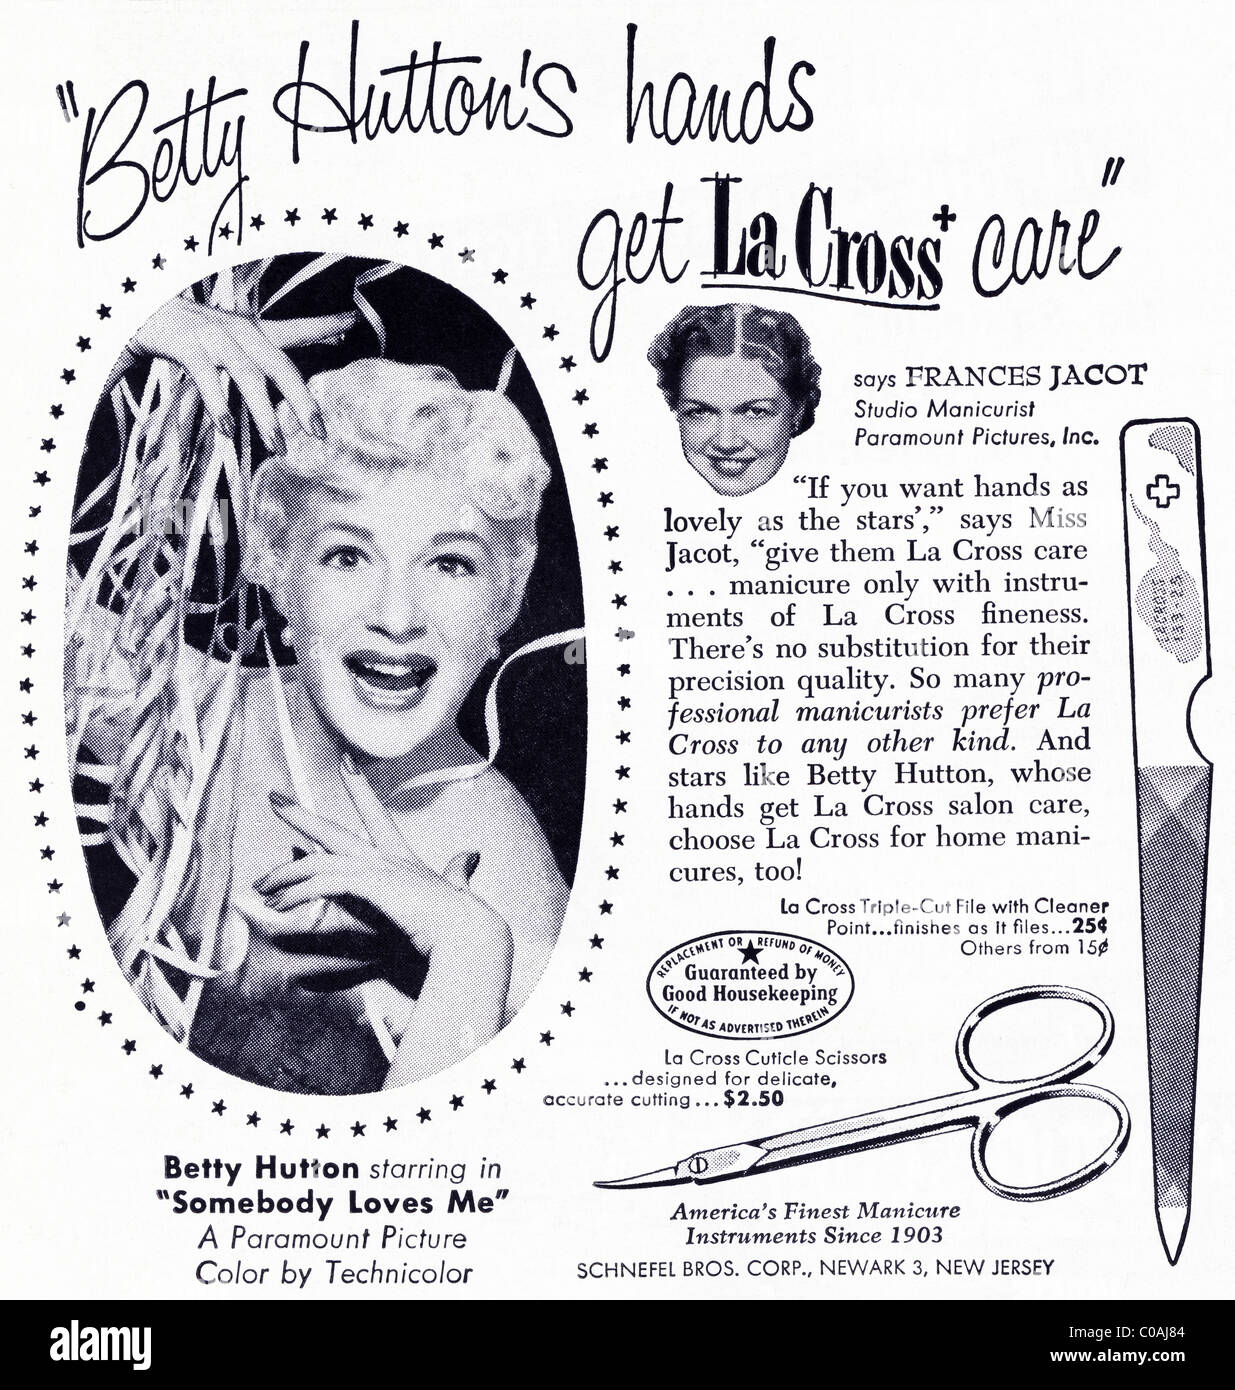 Original 1950s advertisement in American consumer magazine for LA CROSS CUTICLE SCISSORS featuring film star BETTY HUTTON Stock Photo